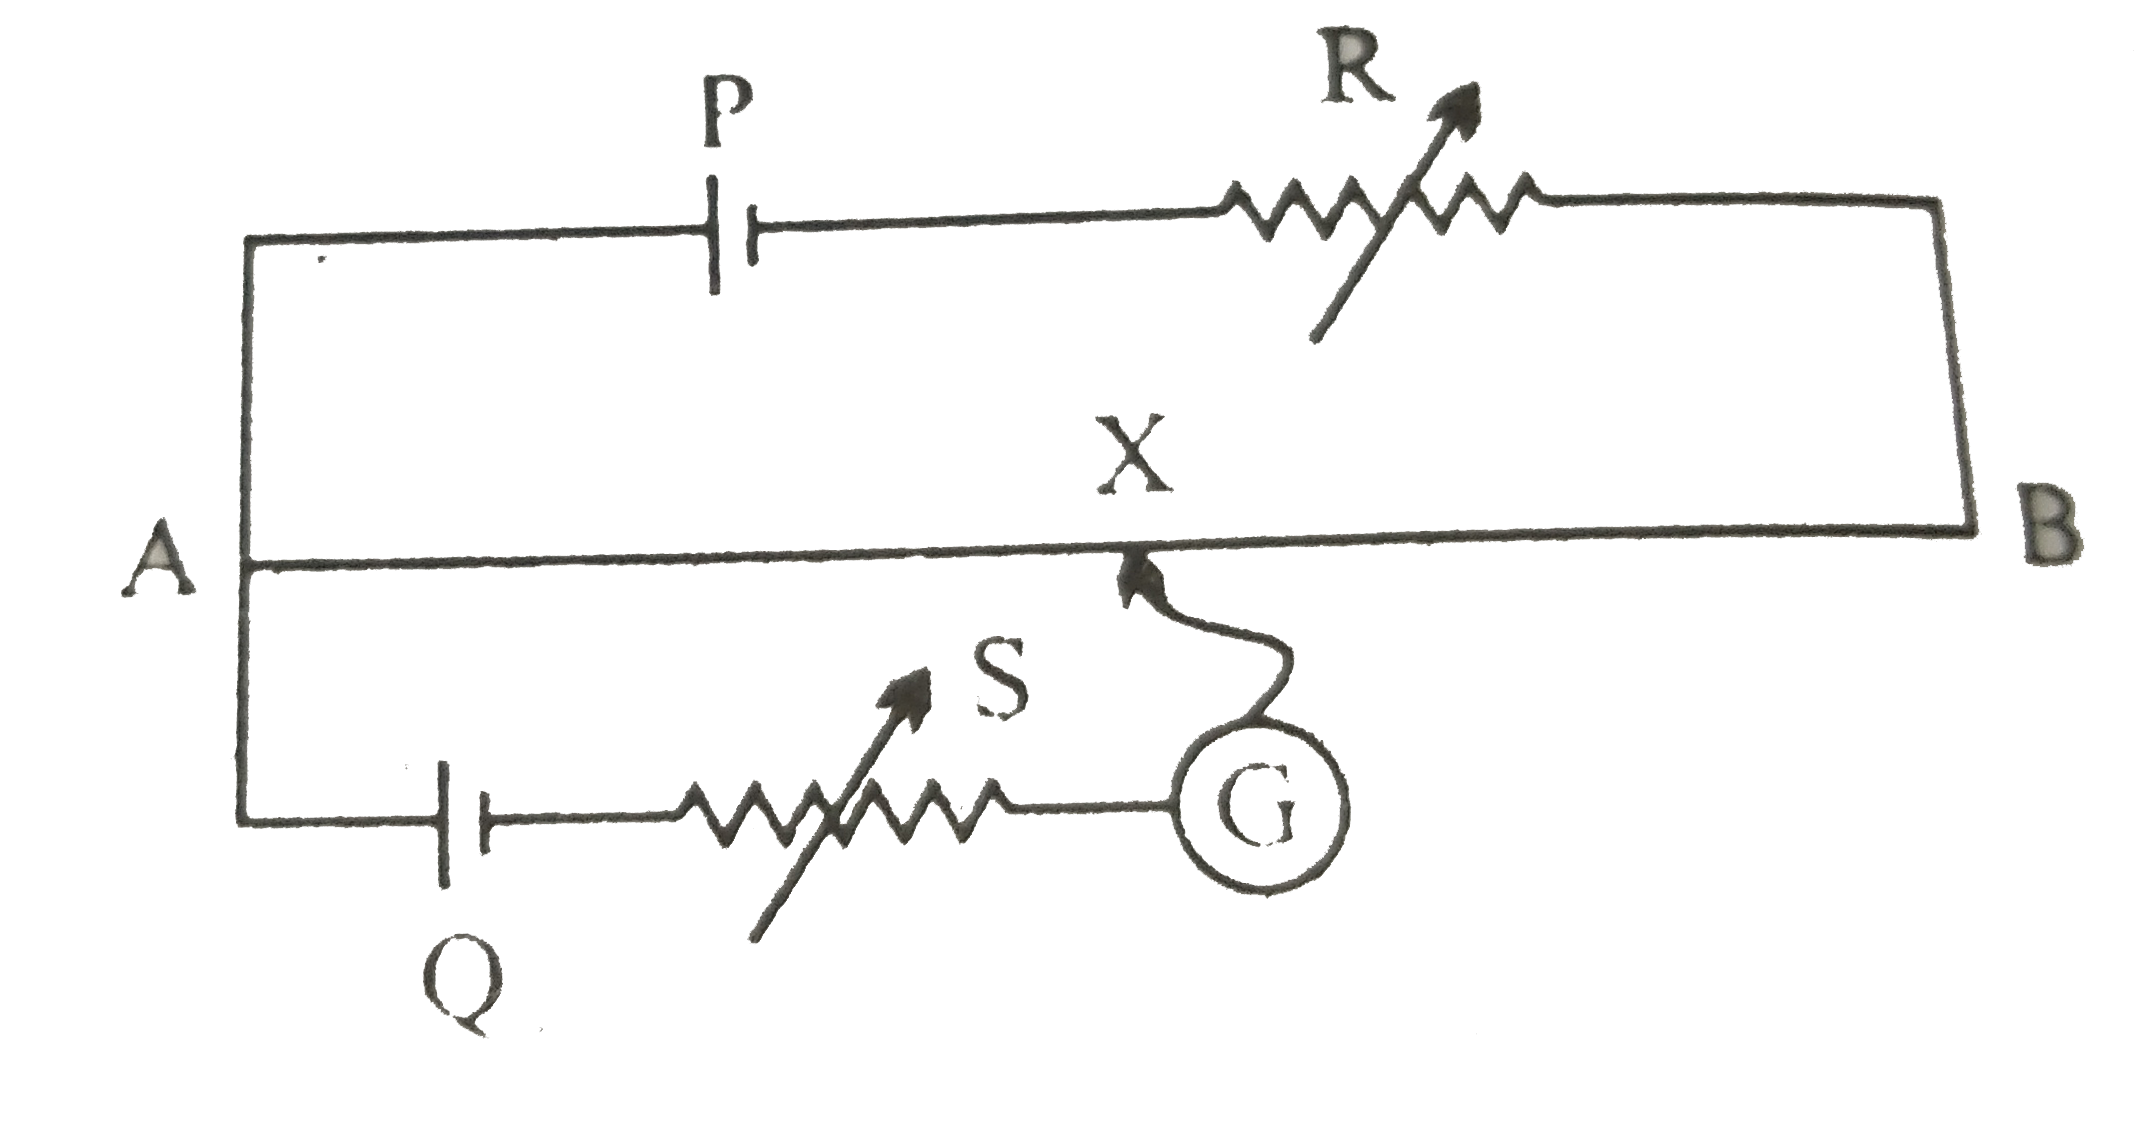 चित्र में एक पोटेशियोमीटर दर्शाया गया है जिसमे एक 2.0V और आंतरिक प्रतिरोध 0.40Omega का कोई सेल, पोटेशियोमीटर के प्रतिरोधक तार AB पर वोल्टता पात बनाए रखता है। कोई मानक सेल जो 1.02V  का अचर विद्युत वाहक बल बनाए रखता है (कुछ mA की बहुत सामान्य धाराओं के लिए) तार की 67.3cm लंबाई पर संतुलन बिंदु देता है। मानक सेल से अति न्यून धारा लेना सुनिश्चित करने के लिए इसके साथ परिपथ में श्रेणी 600kOmega का एक अति उच्च प्रतिरोध इसके साथ संबद्ध किया जाता है, जिसके संतुलन बिंदु प्राप्त होने के निकट लघुपथित कर दिया जाता है। इसके बाद मानक सेल को किसी अज्ञात विद्युत वाहक बल epsilon के सेल से प्रतिस्थापित कर दिया जाता है जिससे संतुलन बिंदु तार की 82.3cm लंबाई पर प्राप्त होता है।      क्या इस उच्च प्रतिरोध में संतुलन बिंदु प्रभावित होता है?